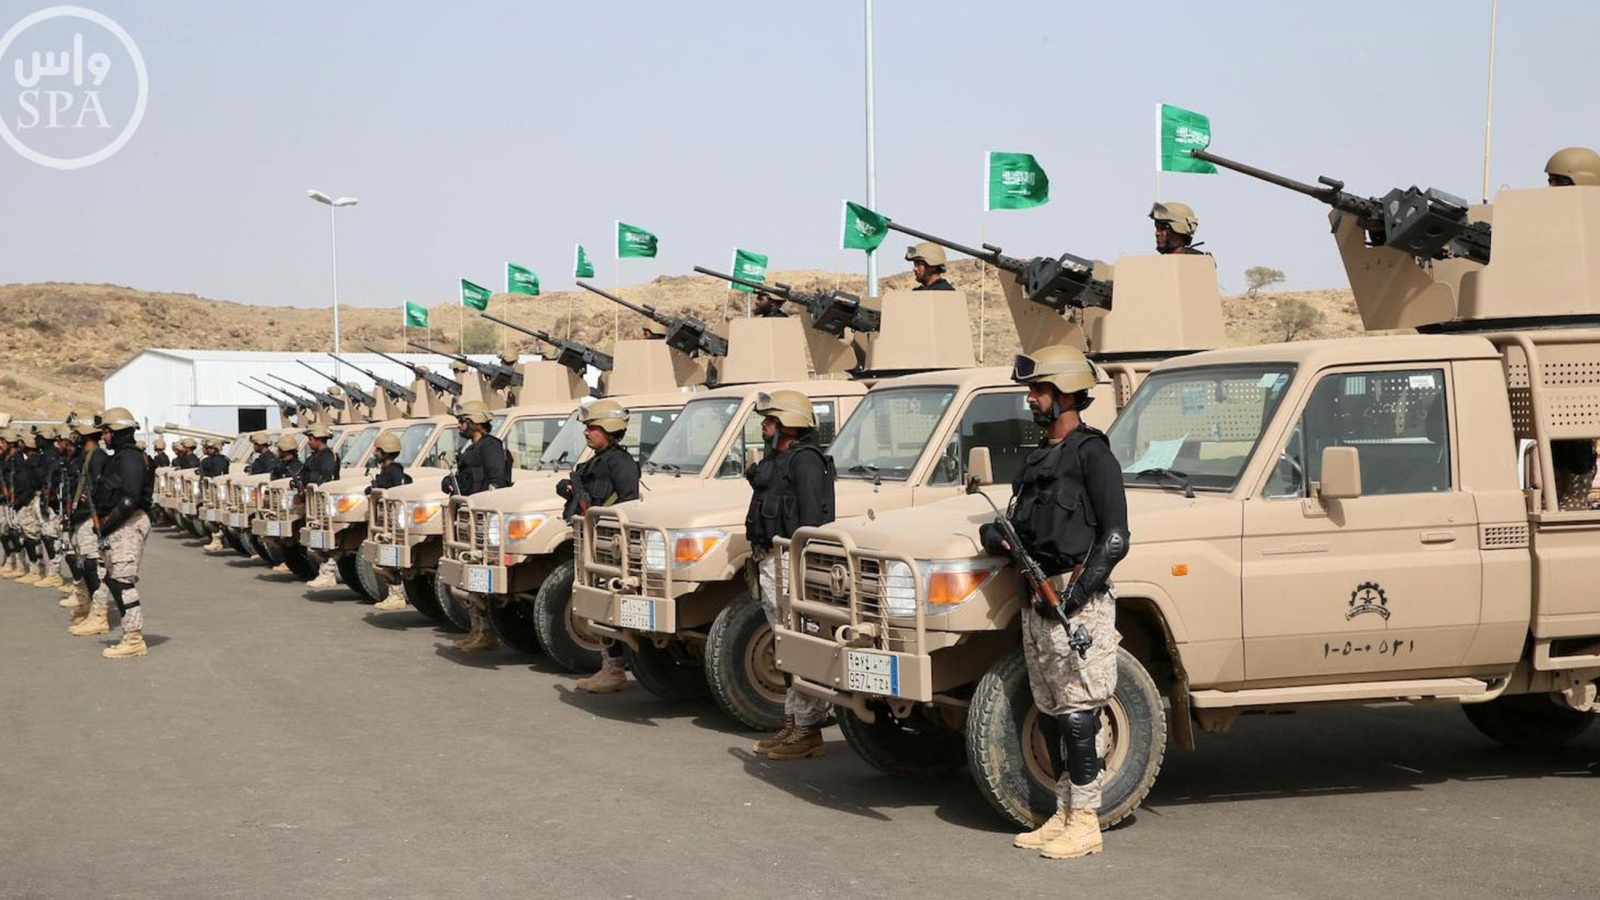 ‪وكالة الأنباء السعودية تتحدث عن أربعة مجالات للشركة الوطنية للصناعات العسكرية‬ وكالة الأنباء السعودية تتحدث عن أربعة مجالات للشركة الوطنية للصناعات العسكرية (رويترز-أرشيف)